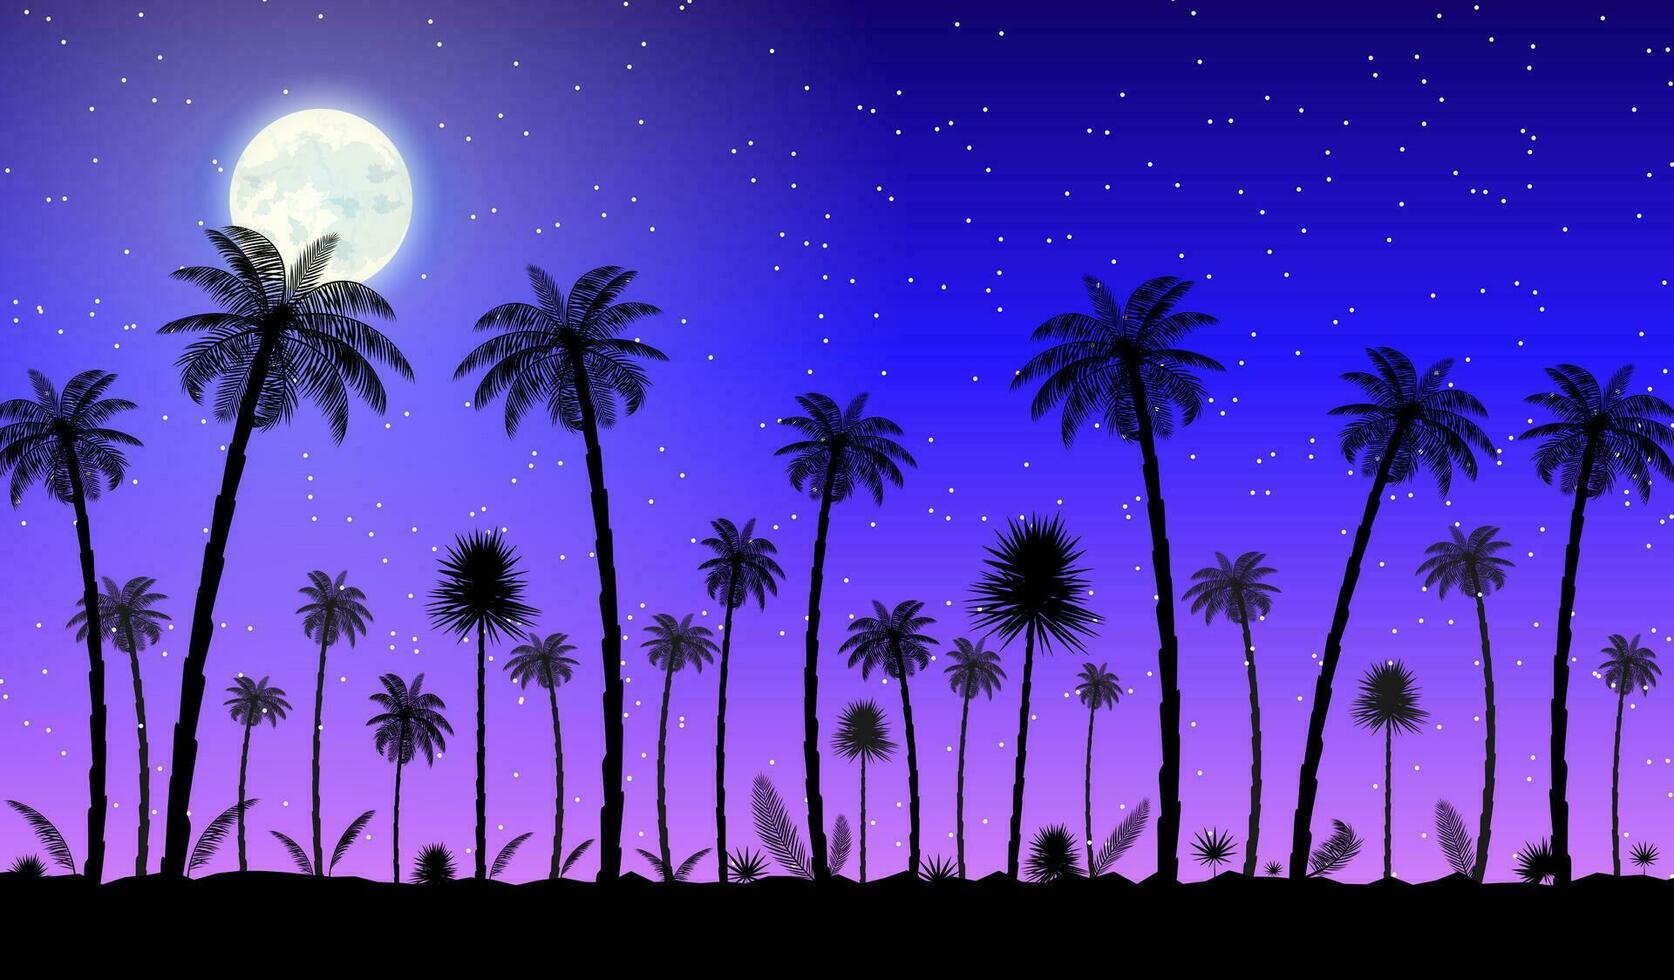 giungla panorama silhouette. notte sjy con Luna e stelle. Noce di cocco palma, mostri, fan palma, Rapis, Banana albero. naturale foglia, esotico rami albero. vettore illustrazione